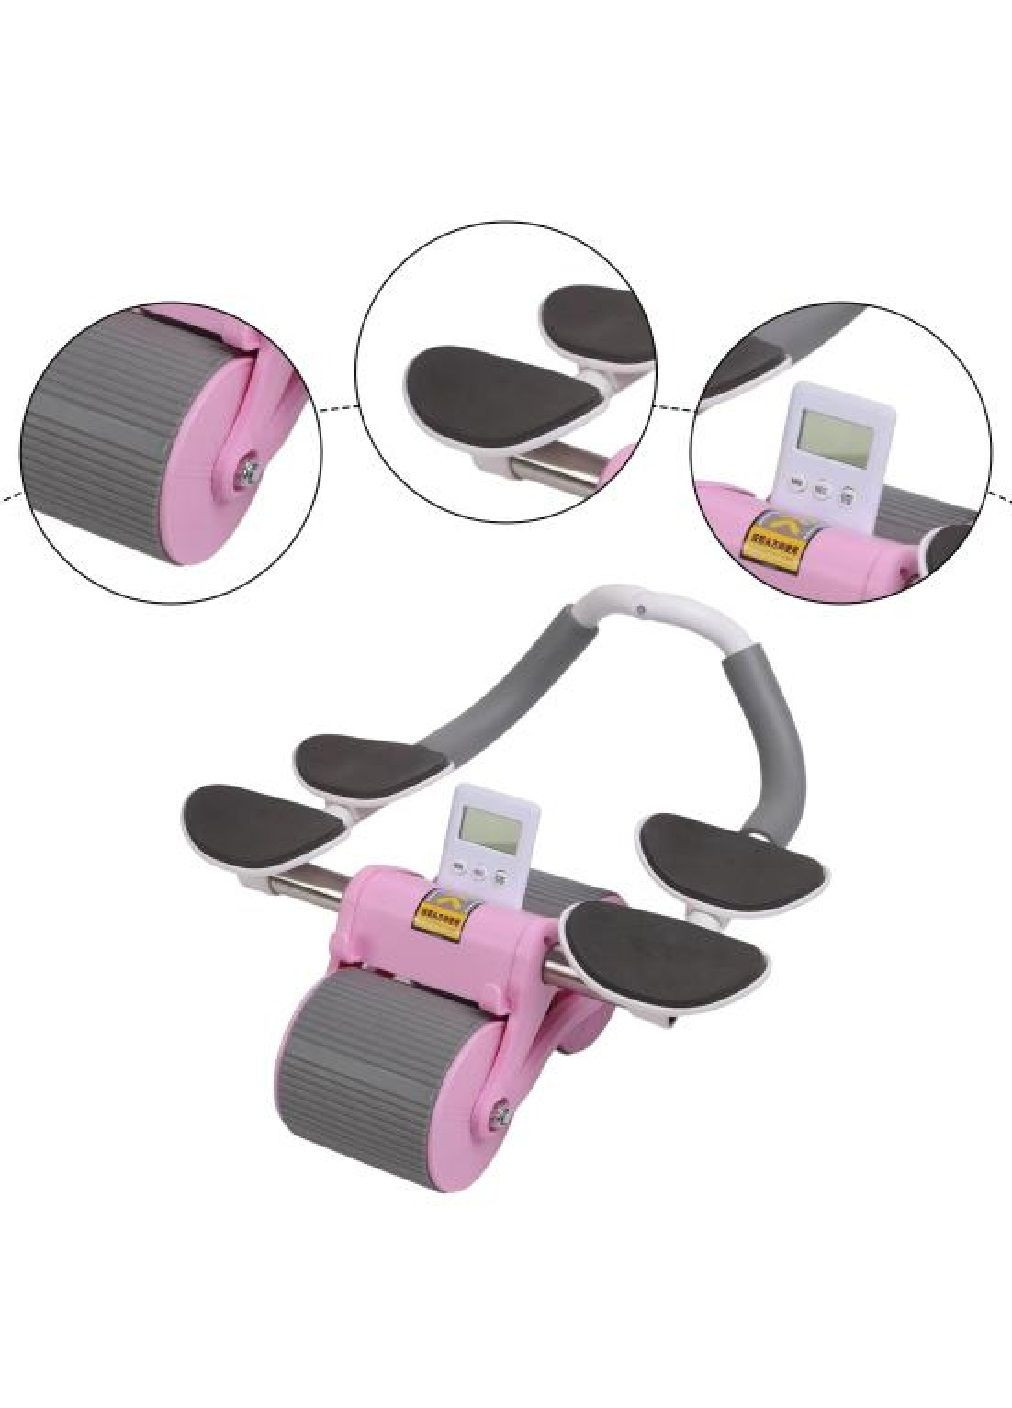 Ролик колесо тренажер для преса з таймером підставками для смартфона килимком 25×40 см (476460-Prob) Рожевий із сірим Unbranded (282923117)